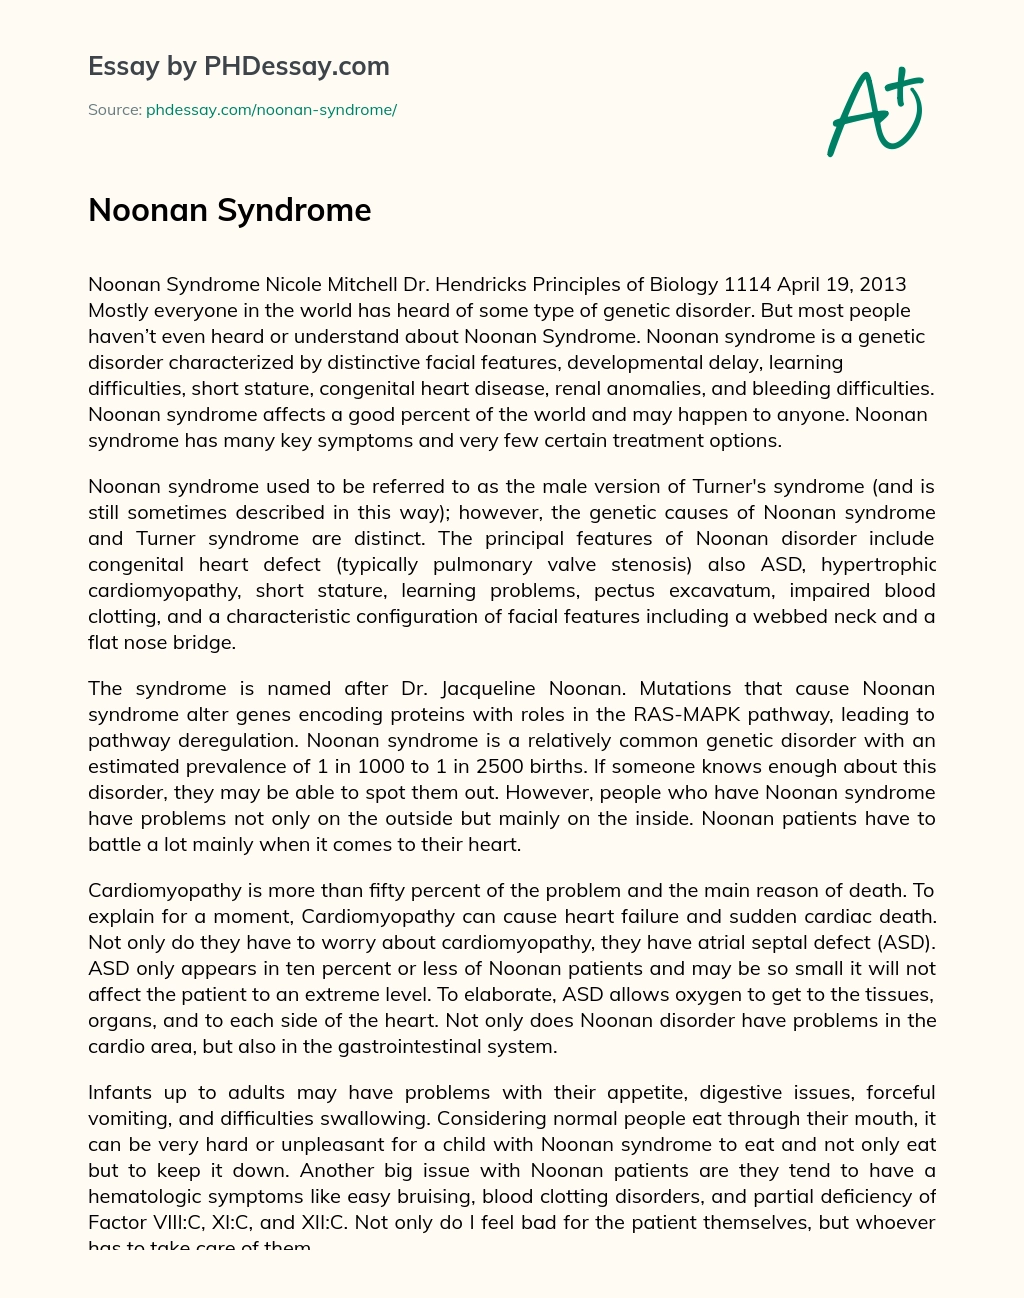 Noonan Syndrome essay